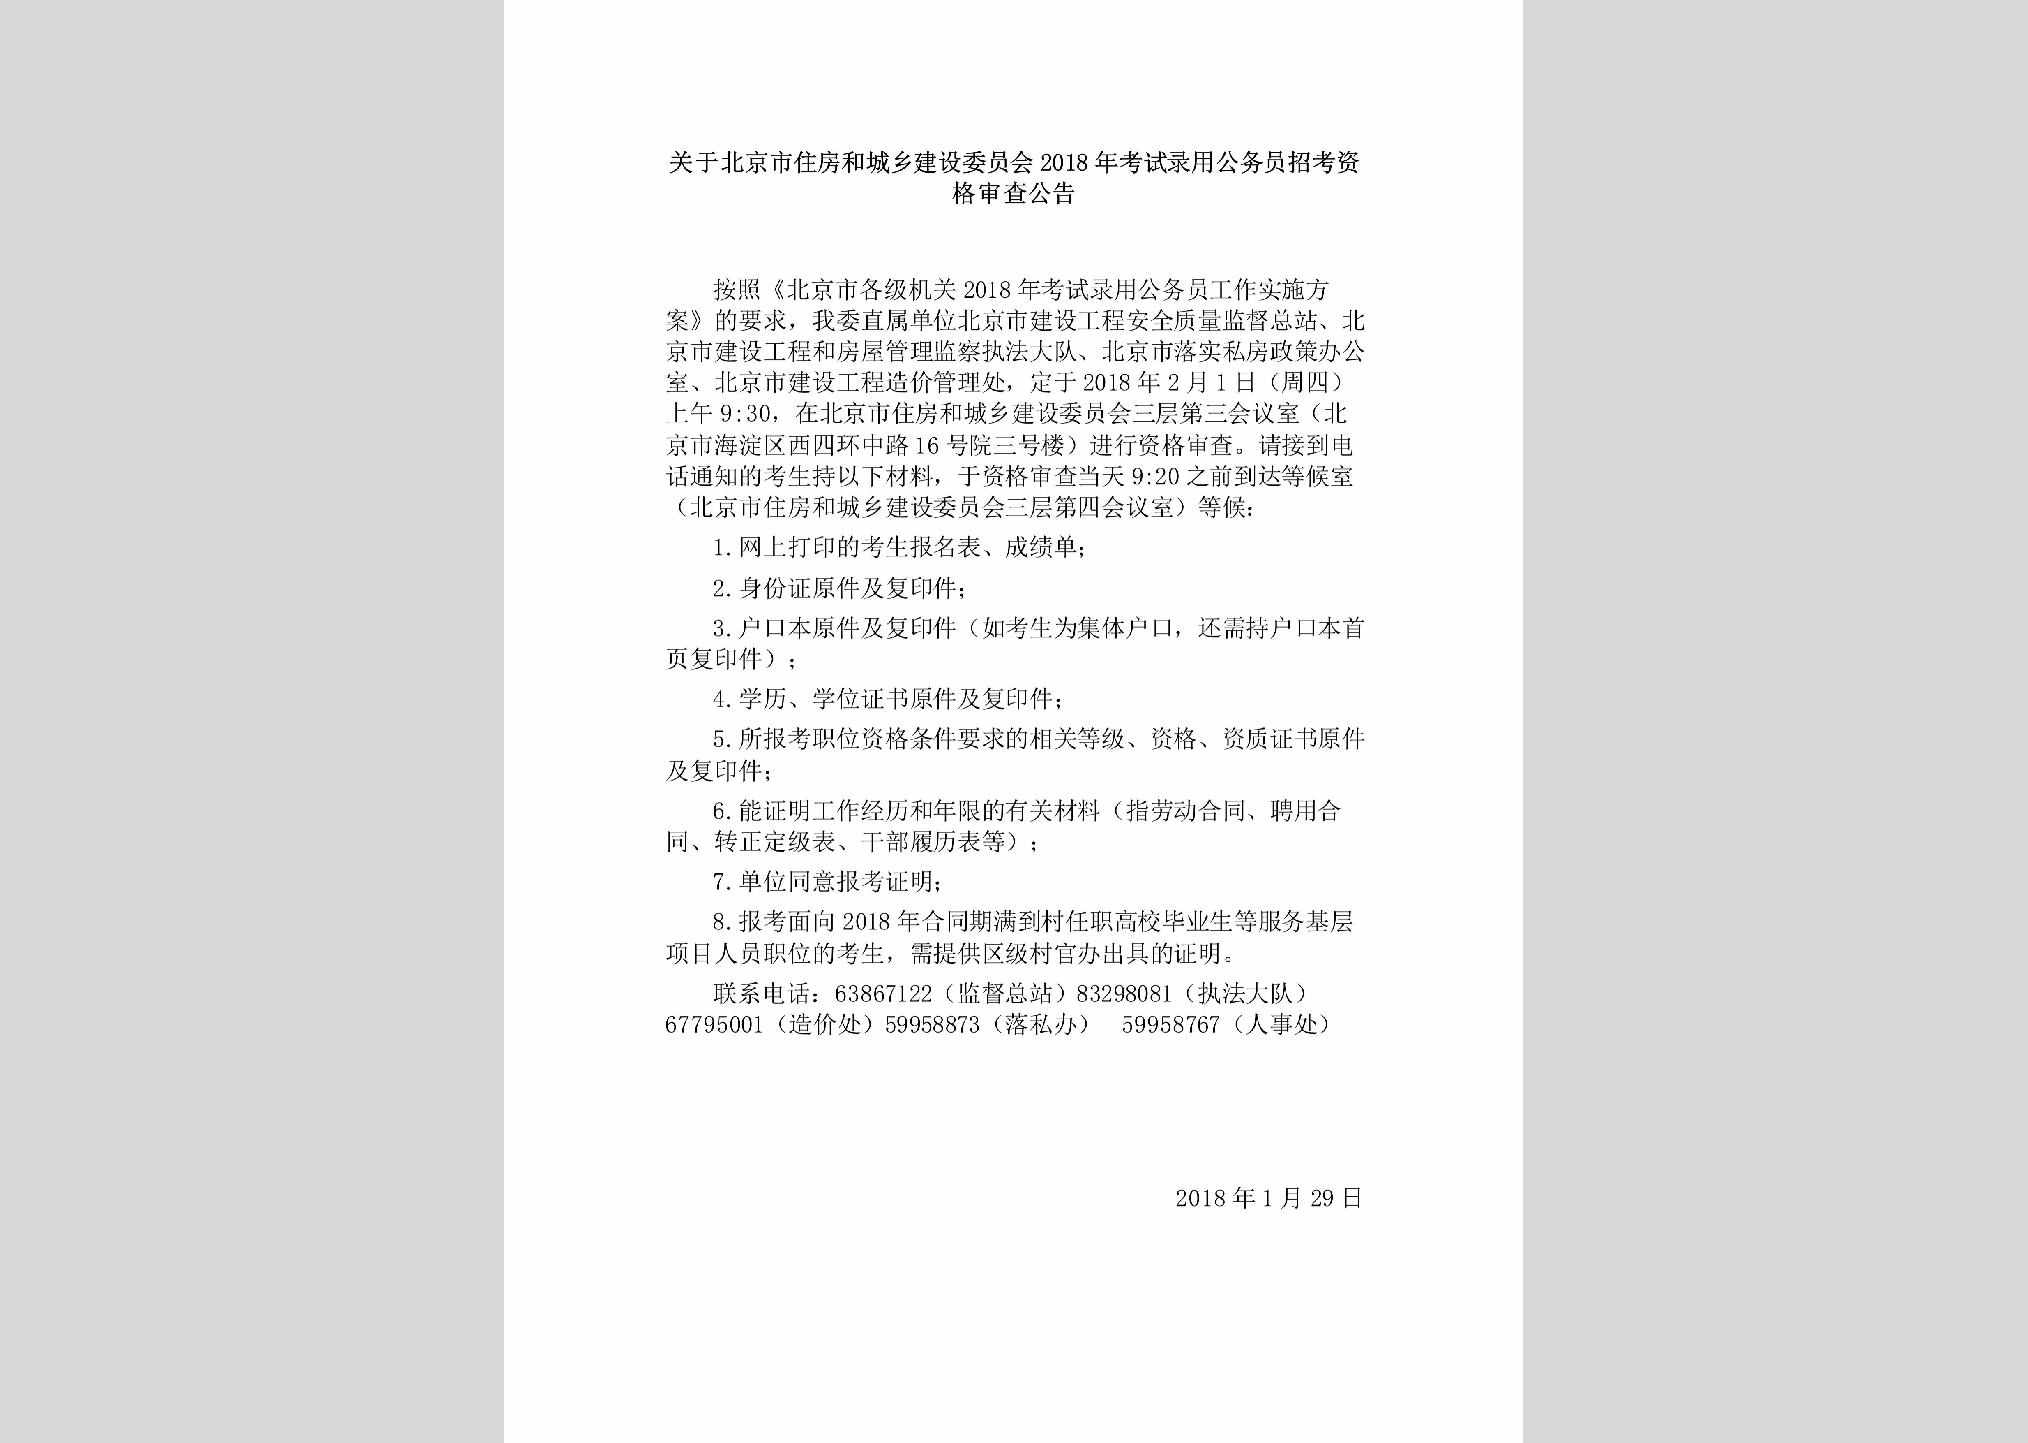 BJ-KSLYZKSC-2018：关于北京市住房和城乡建设委员会2018年考试录用公务员招考资格审查公告